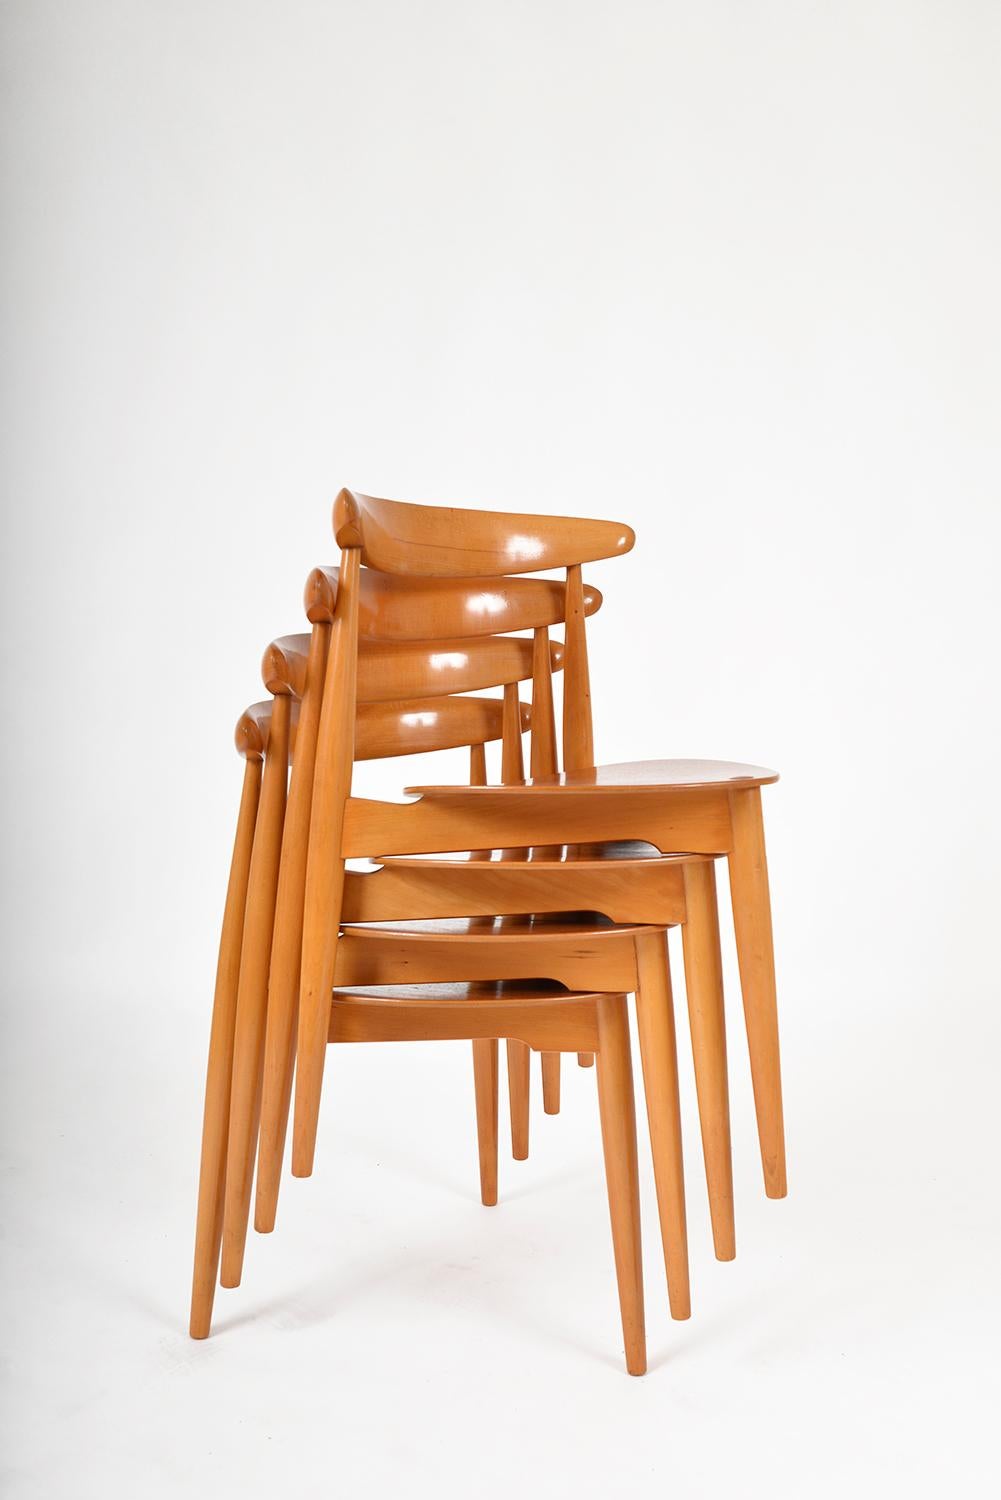 Superbe ensemble de quatre chaises de salle à manger Fritz Hansen FH4103 'Heart' de la première génération des années 1950, conçues en 1953 par Hans Wegner. Elles ne sont pas seulement belles, elles sont aussi pratiques - les chaises à trois pieds